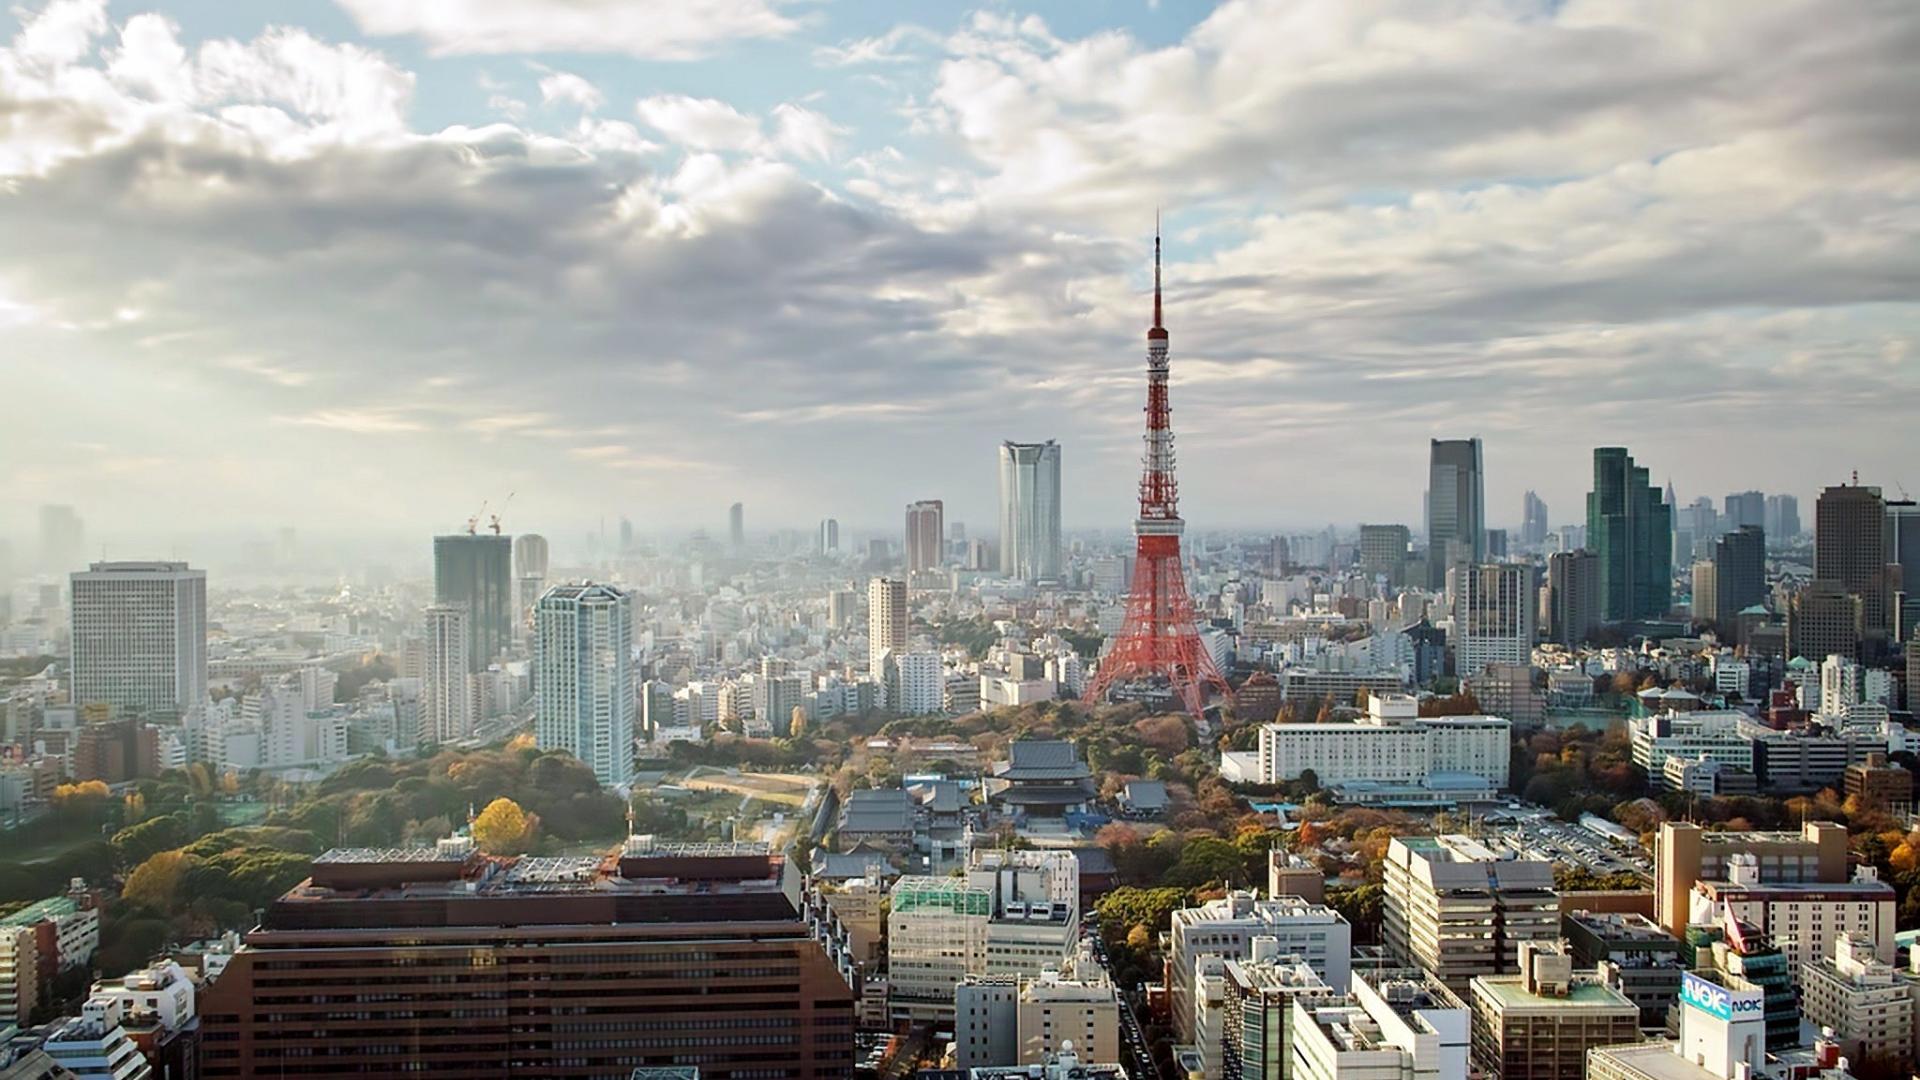 東京タワーの壁紙,市,都市の景観,首都圏,市街地,スカイライン